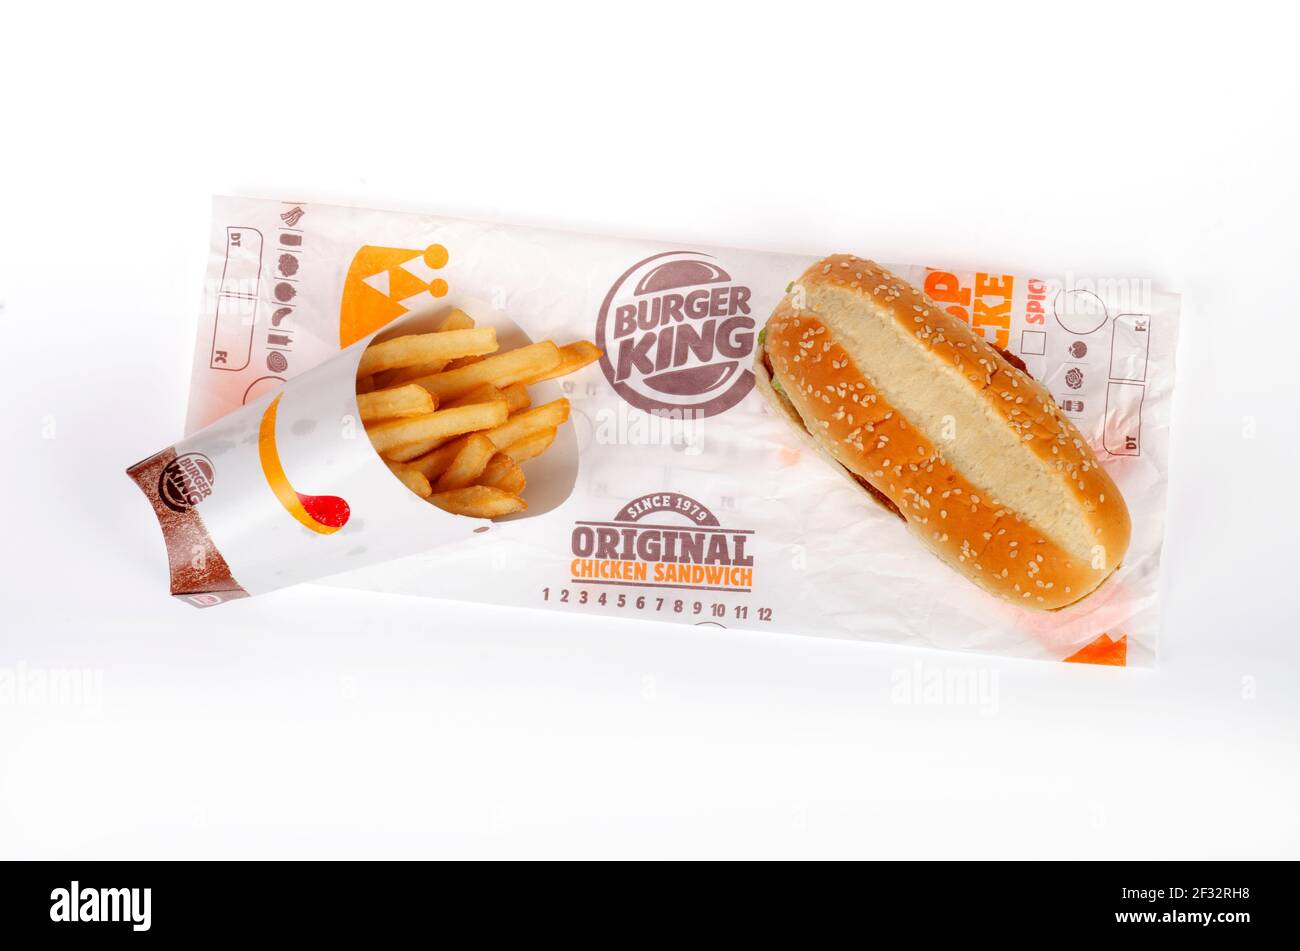 Burger King, panino di pollo originale e patatine fritte su involucri Foto Stock